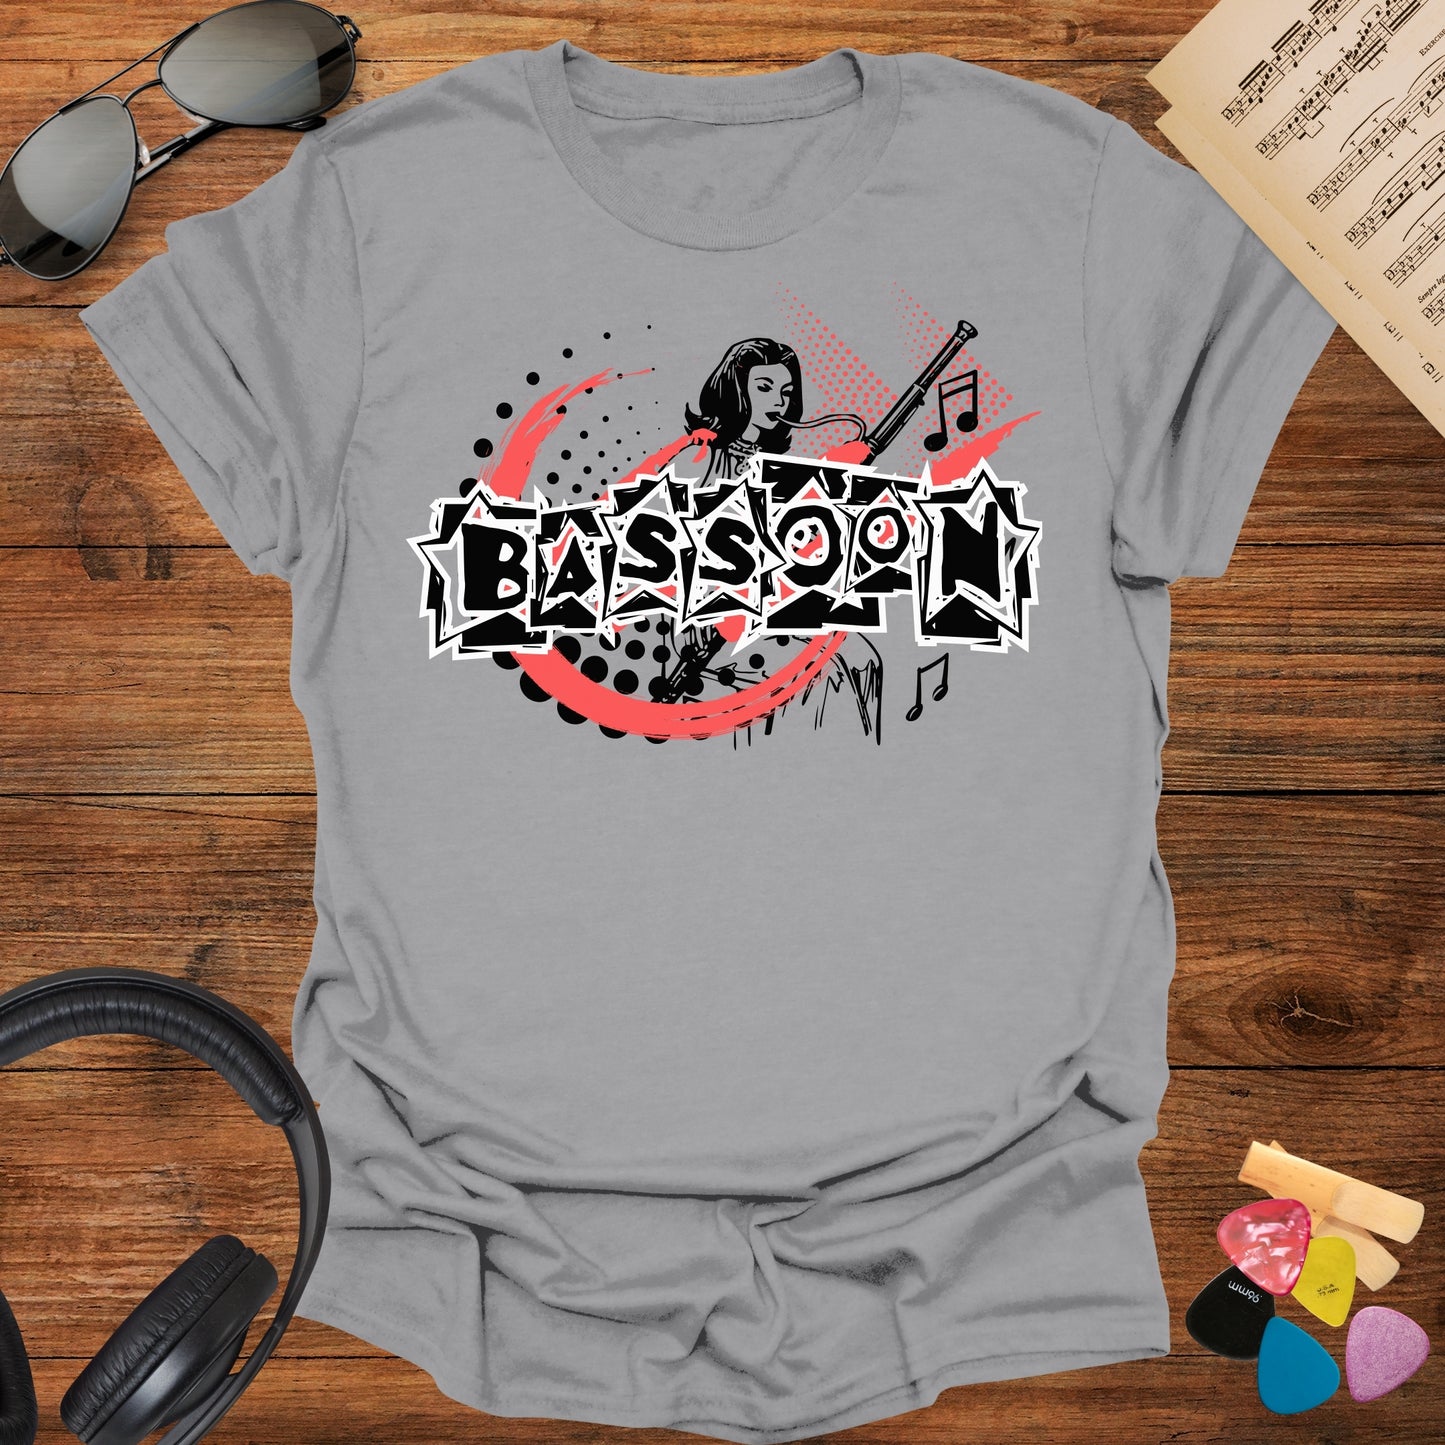 Bassoon T-shirt